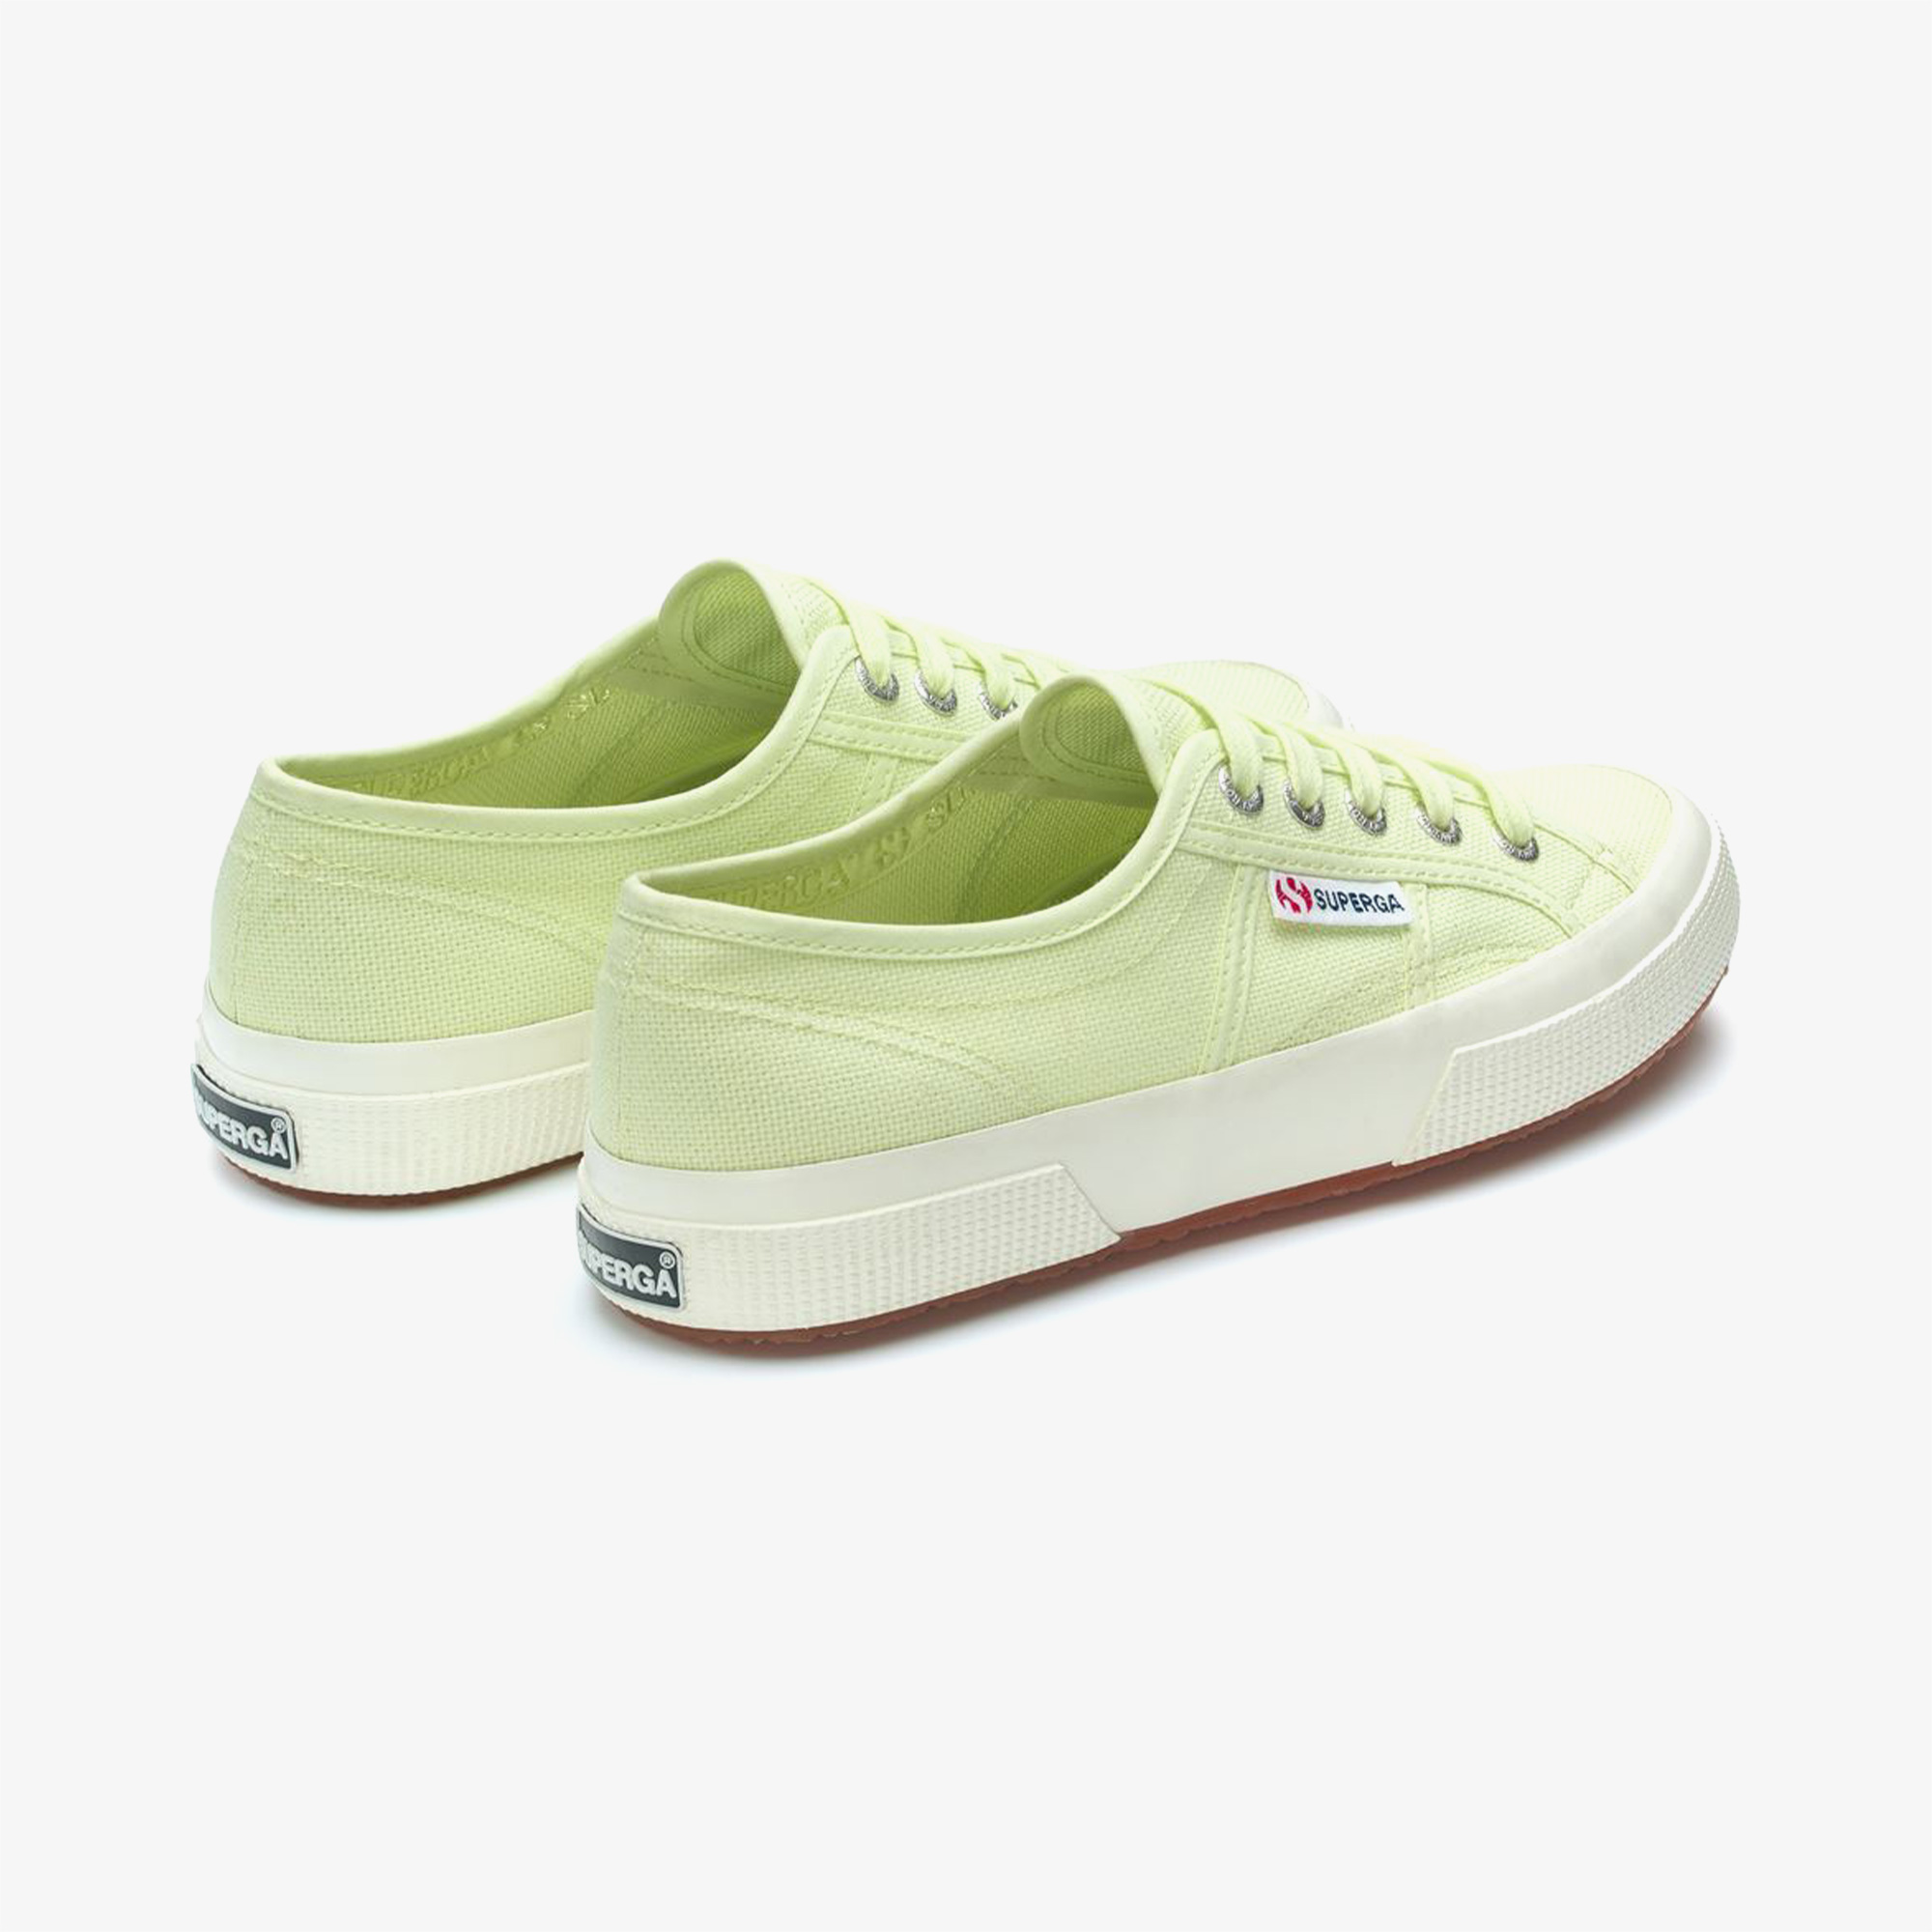 Superga 2750 Cotu Classic Kadın Yeşil Sneaker